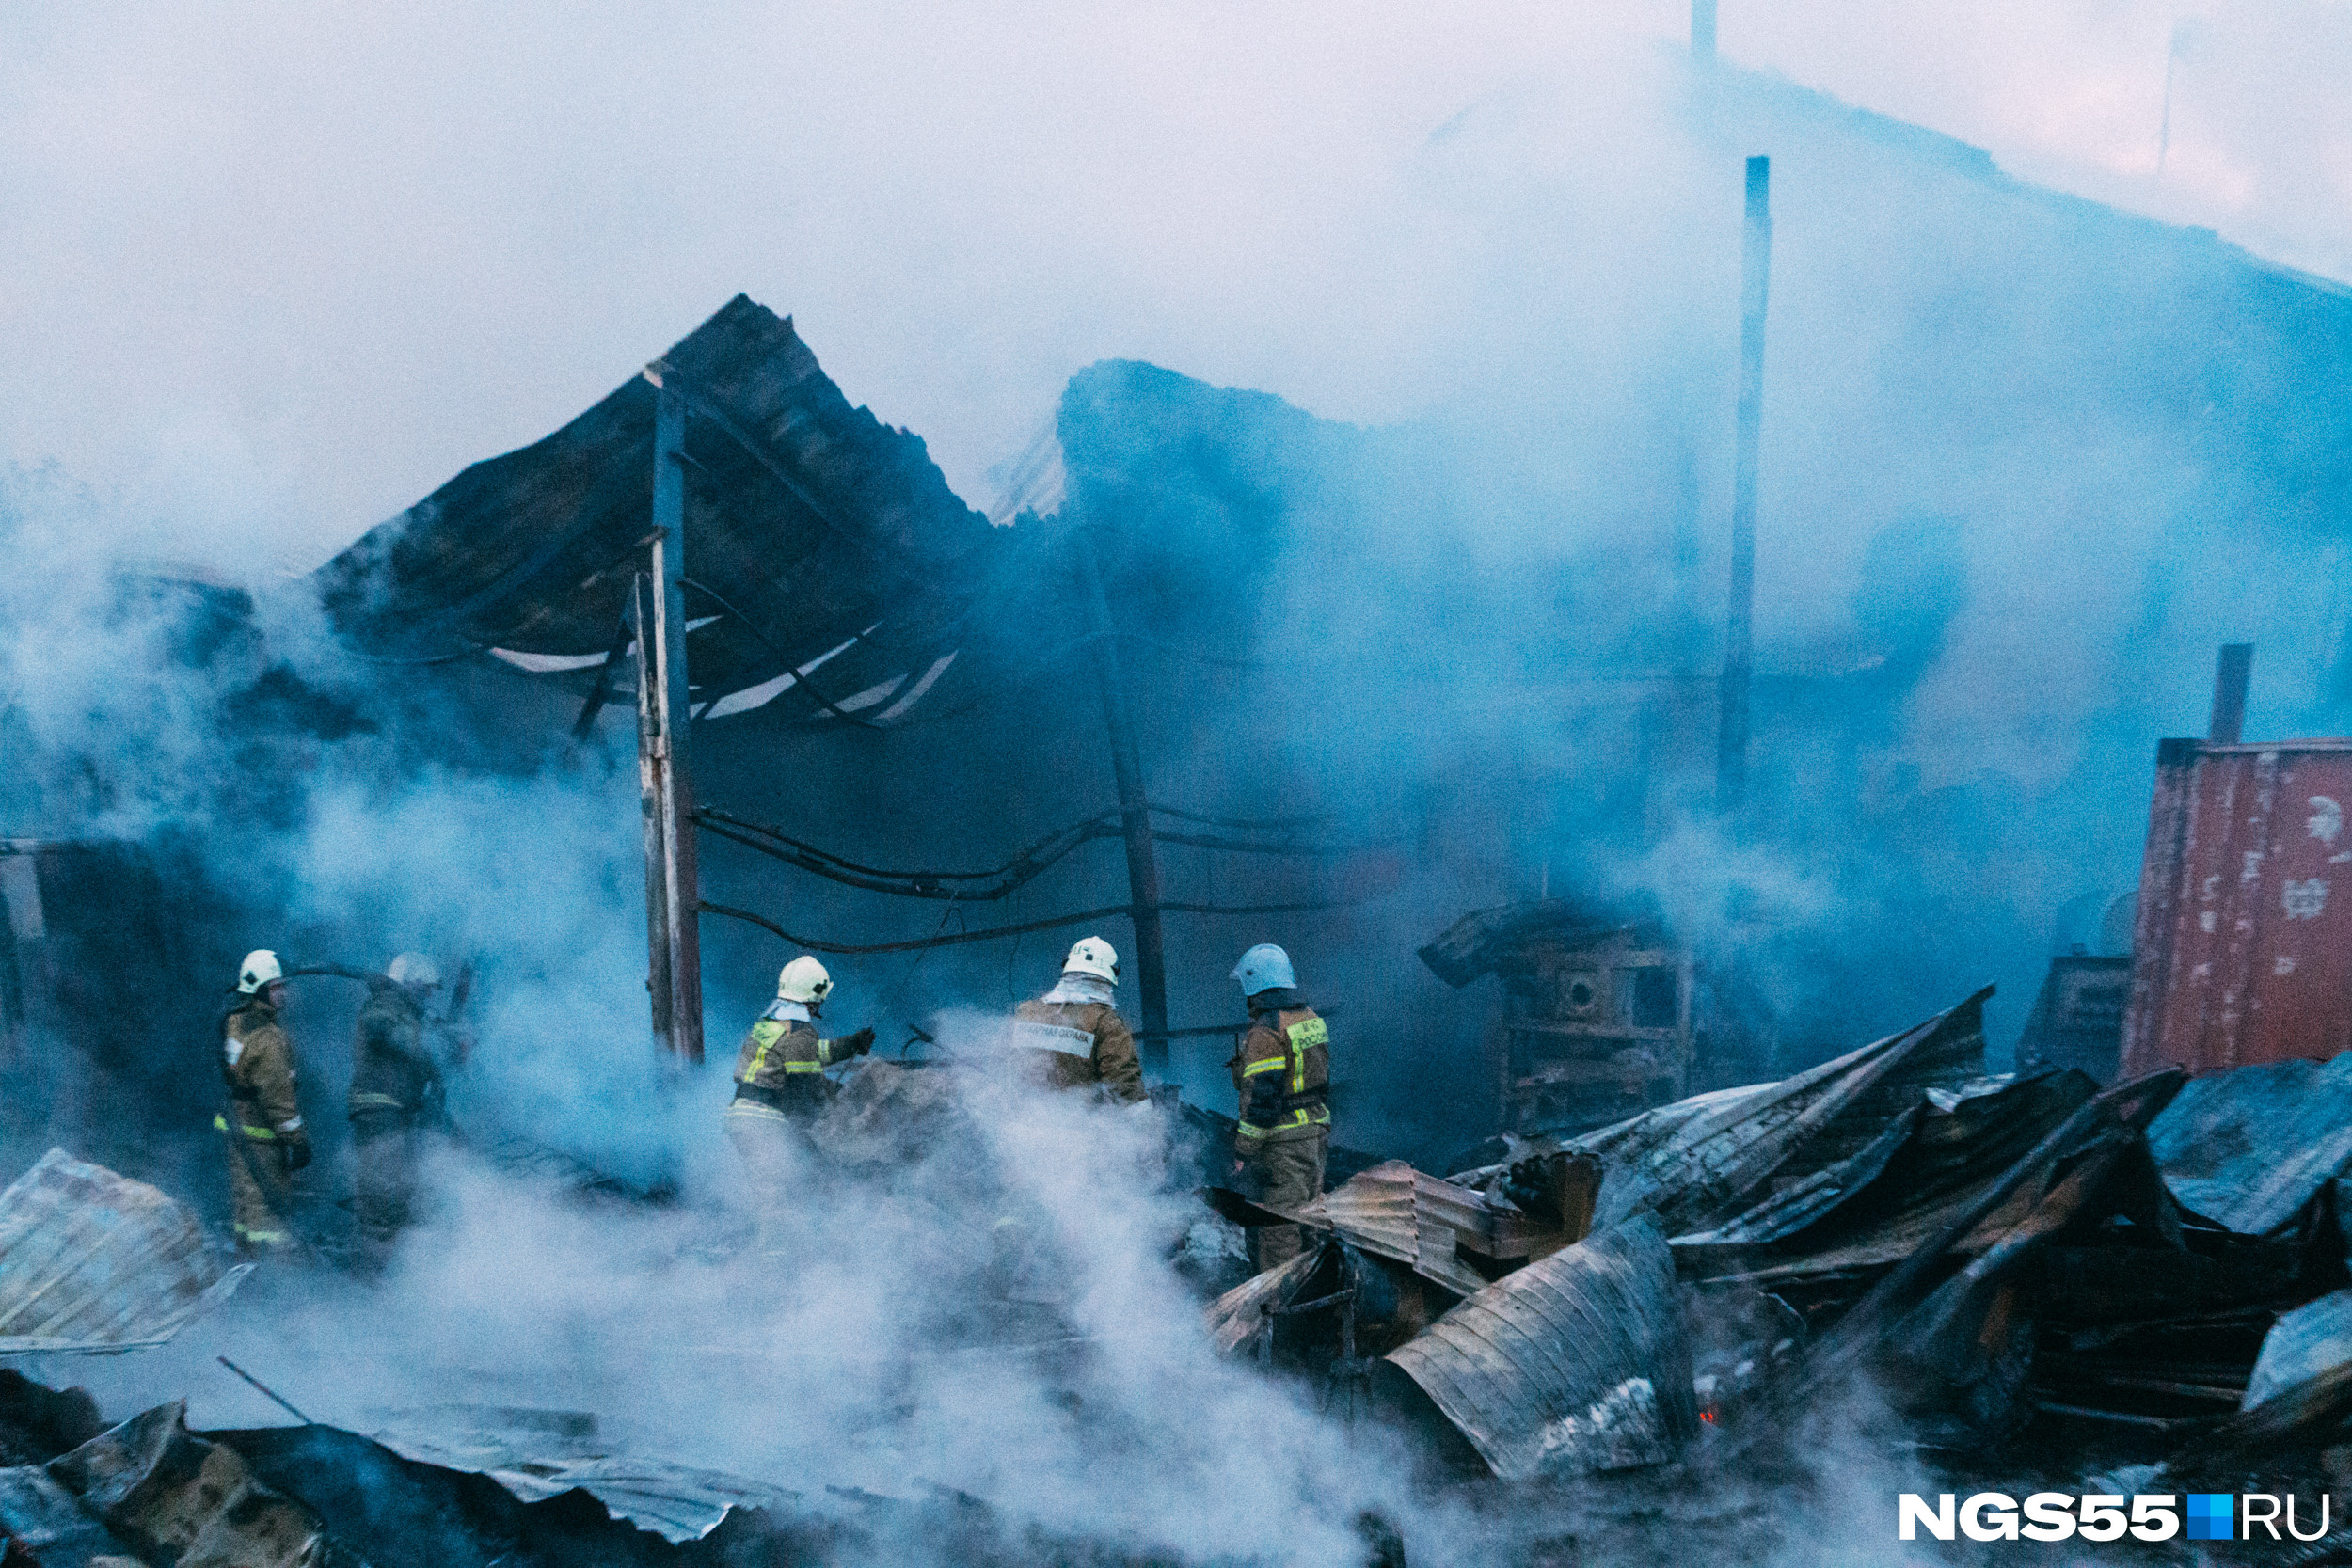 Пожарные изучают дымящиеся развалины. Хозяйственный корпус принадлежал торгово-строительной фирме «АбсолютМастер»